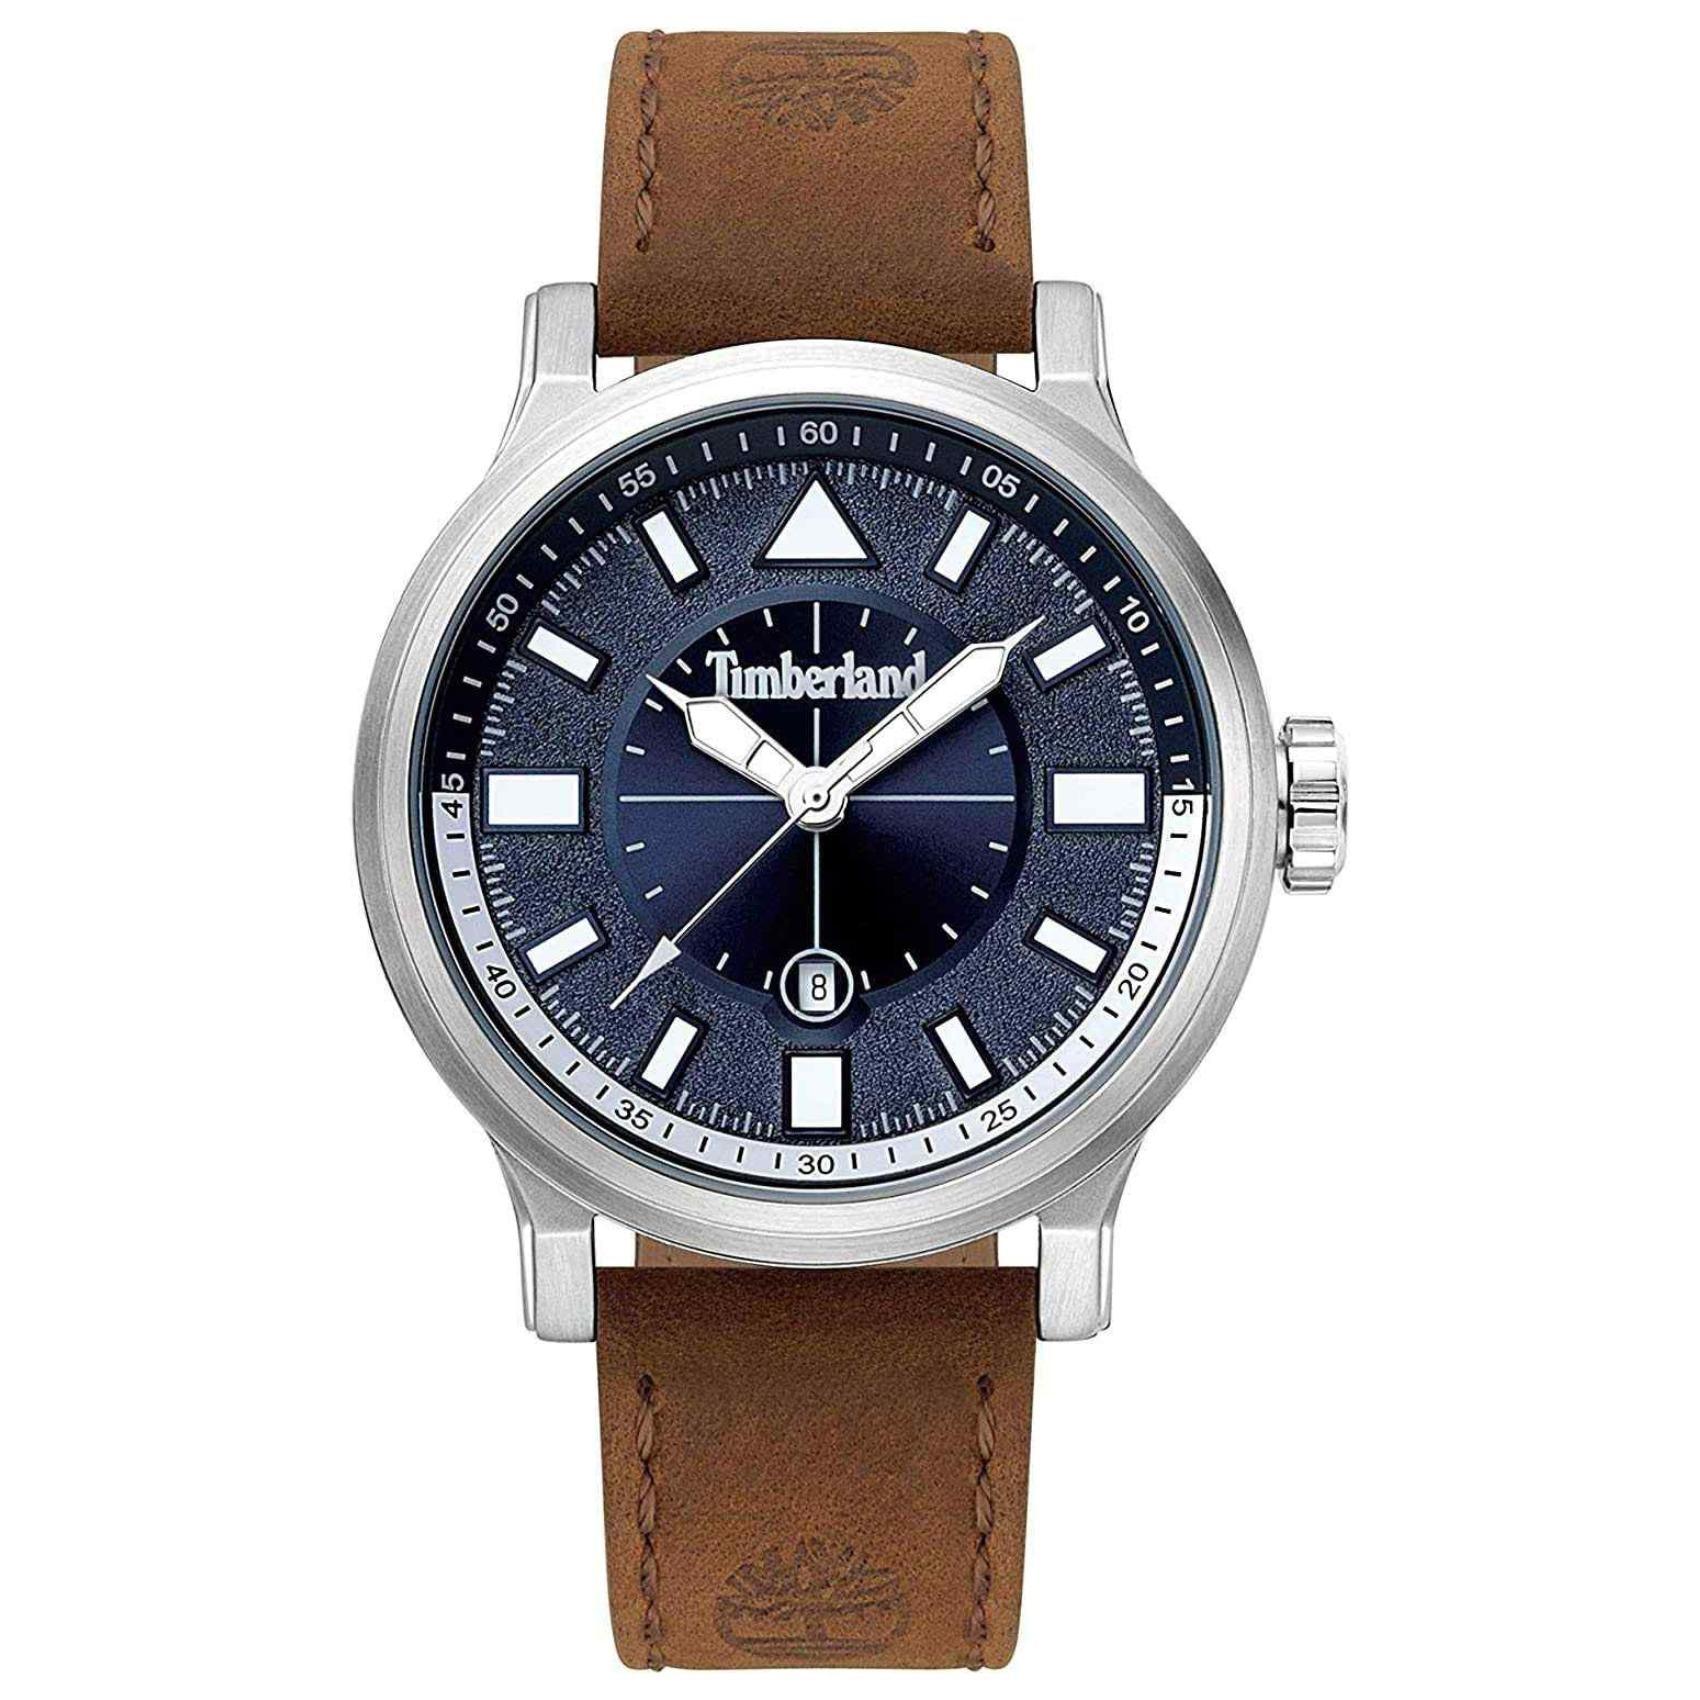 Αντρικό ρολόι Timberland Driscoll TBL15248JS03 με καφέ δερμάτινο λουράκι και μπλε καντράν διαμέτρου 46mm με ημερομηνία.